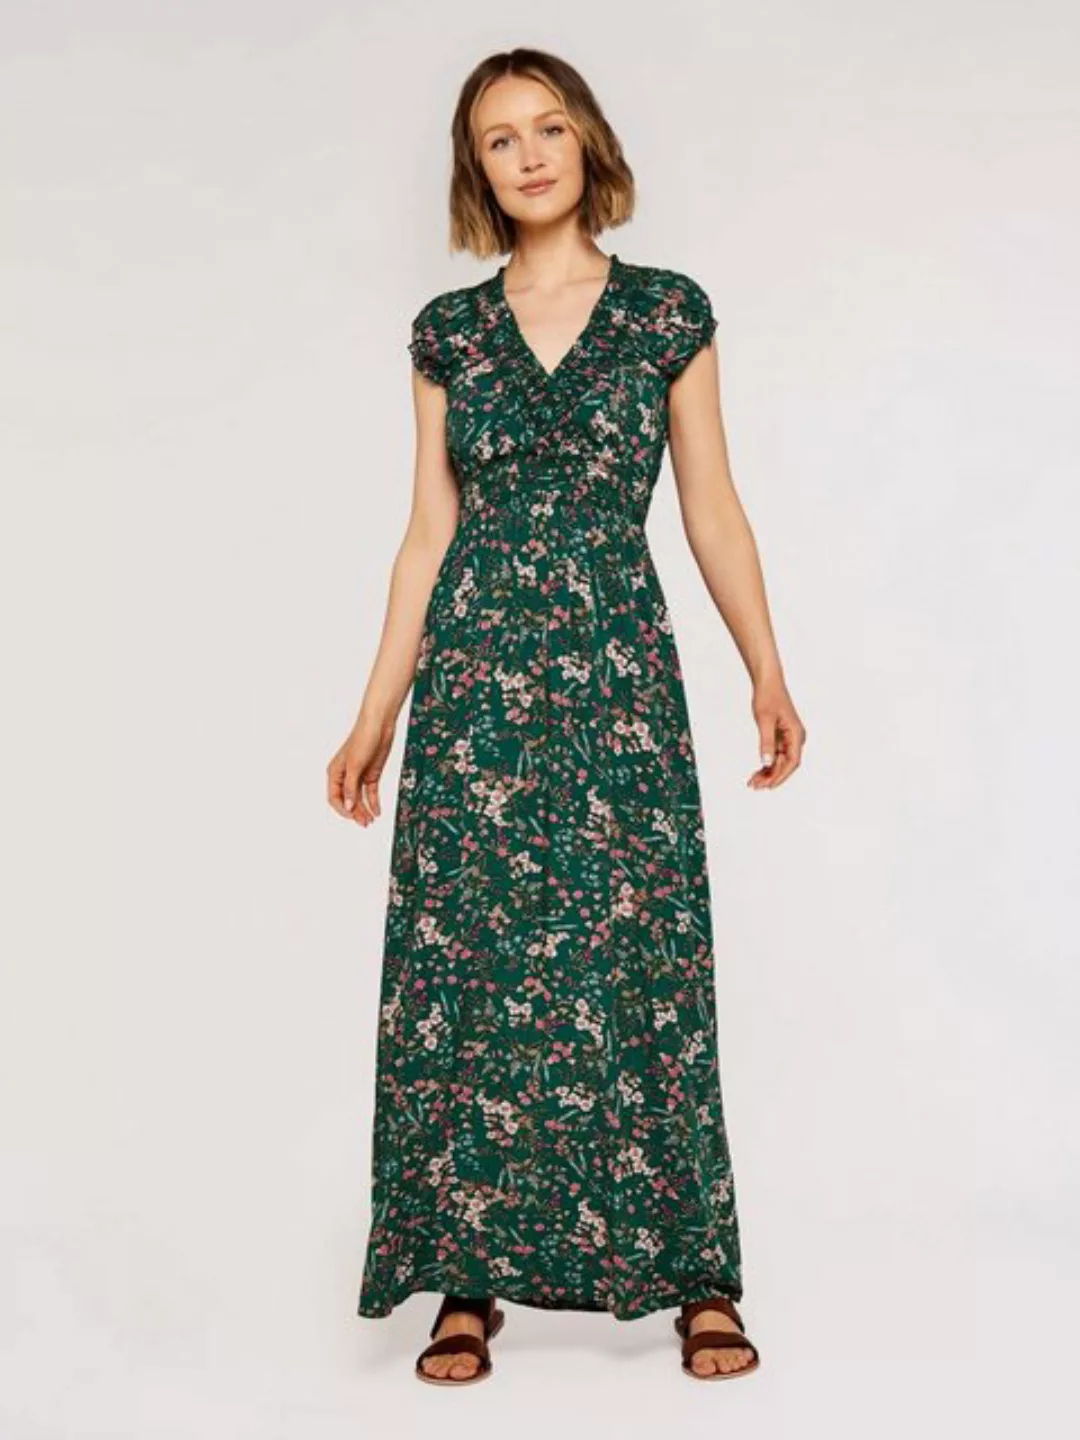 Apricot Sommerkleid mit Blumenmuster, falten günstig online kaufen